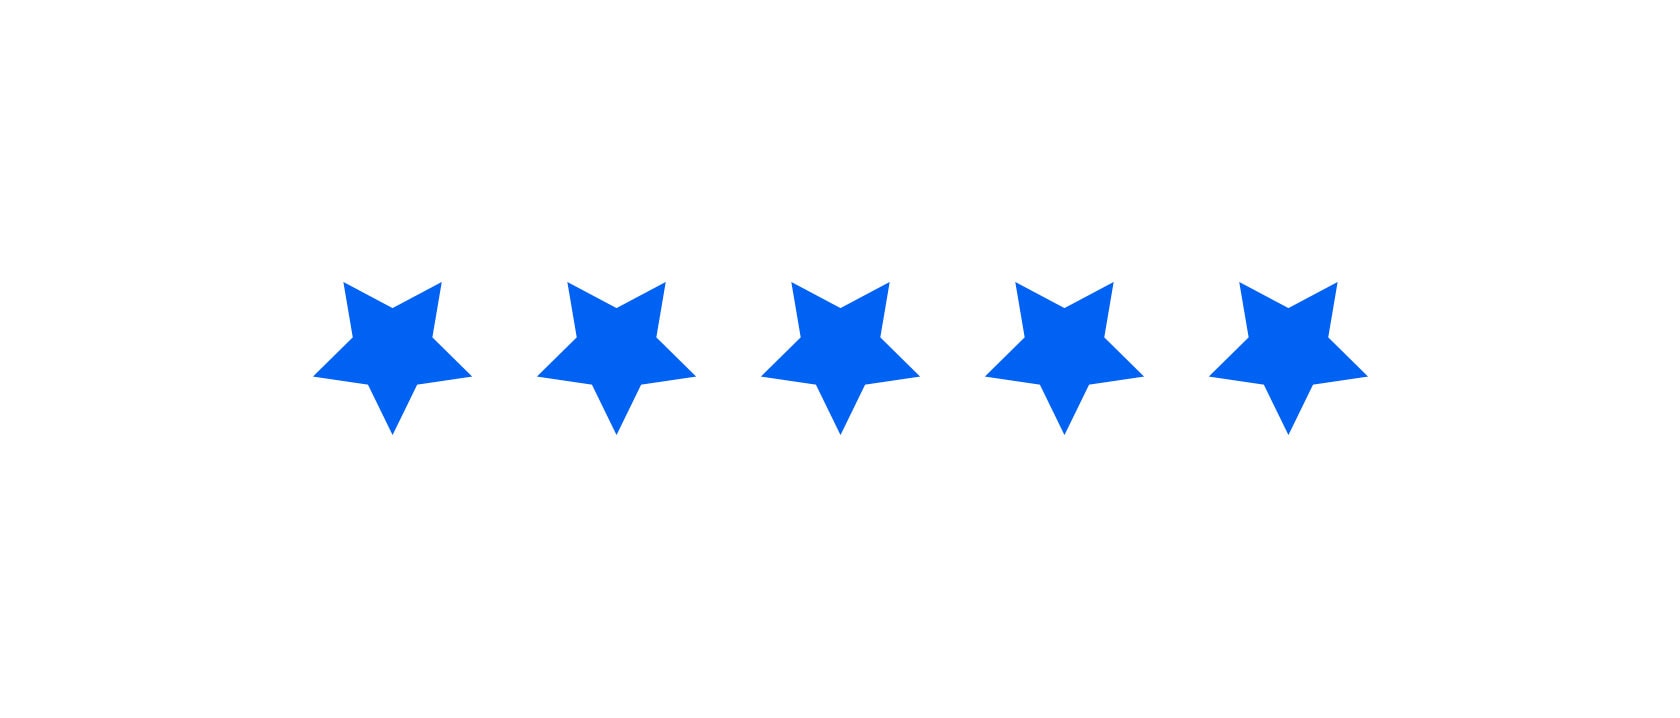 Cinco estrellas en color azul.